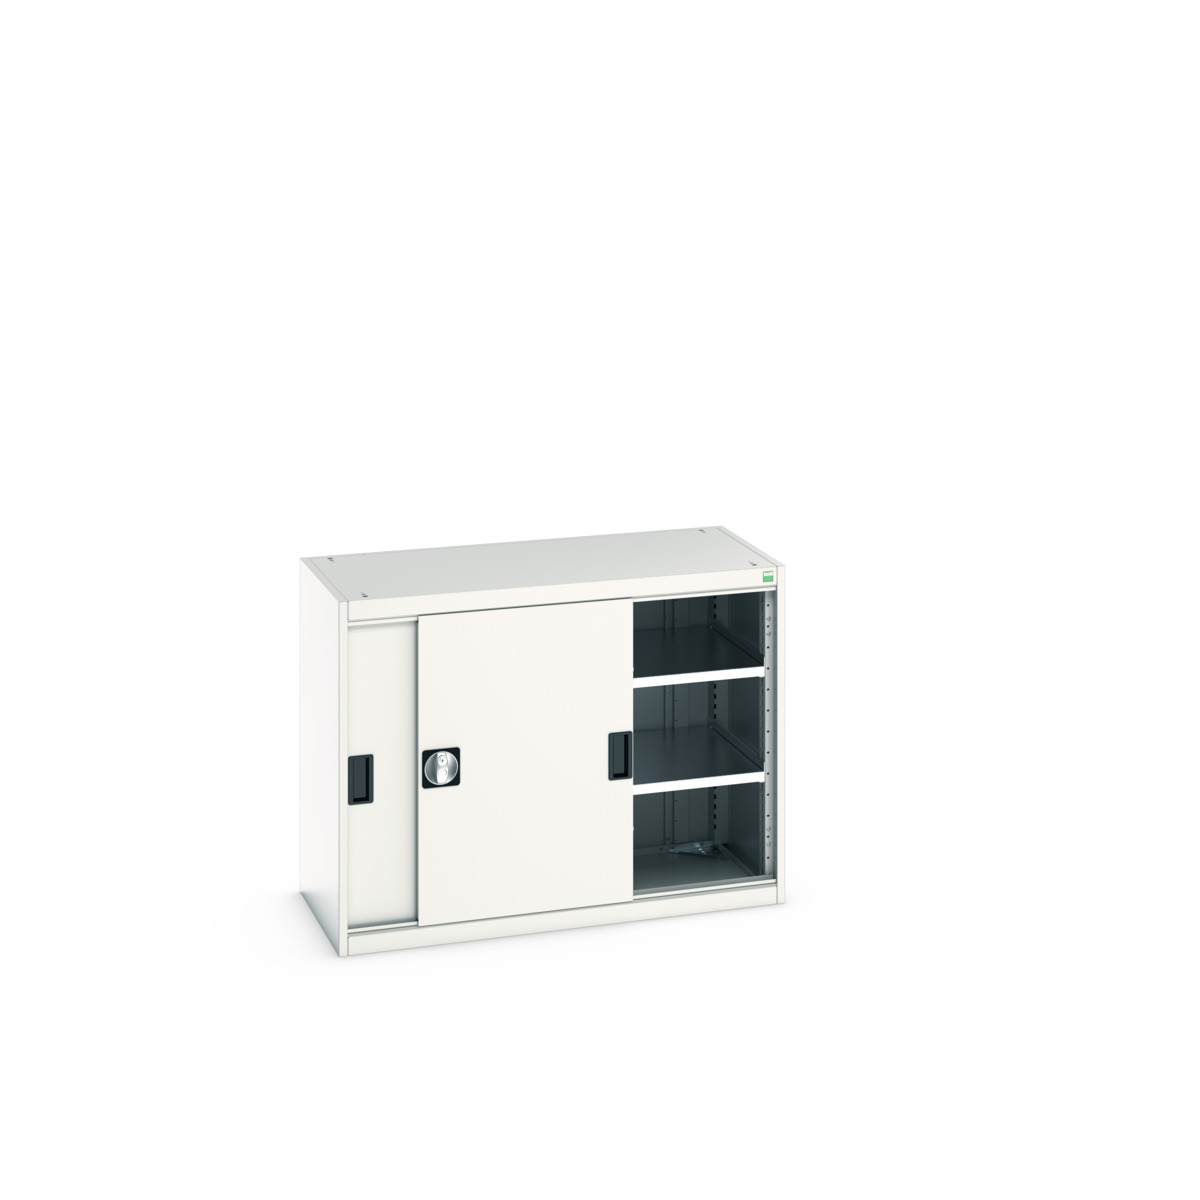 40013067.16V - cubio cupboard